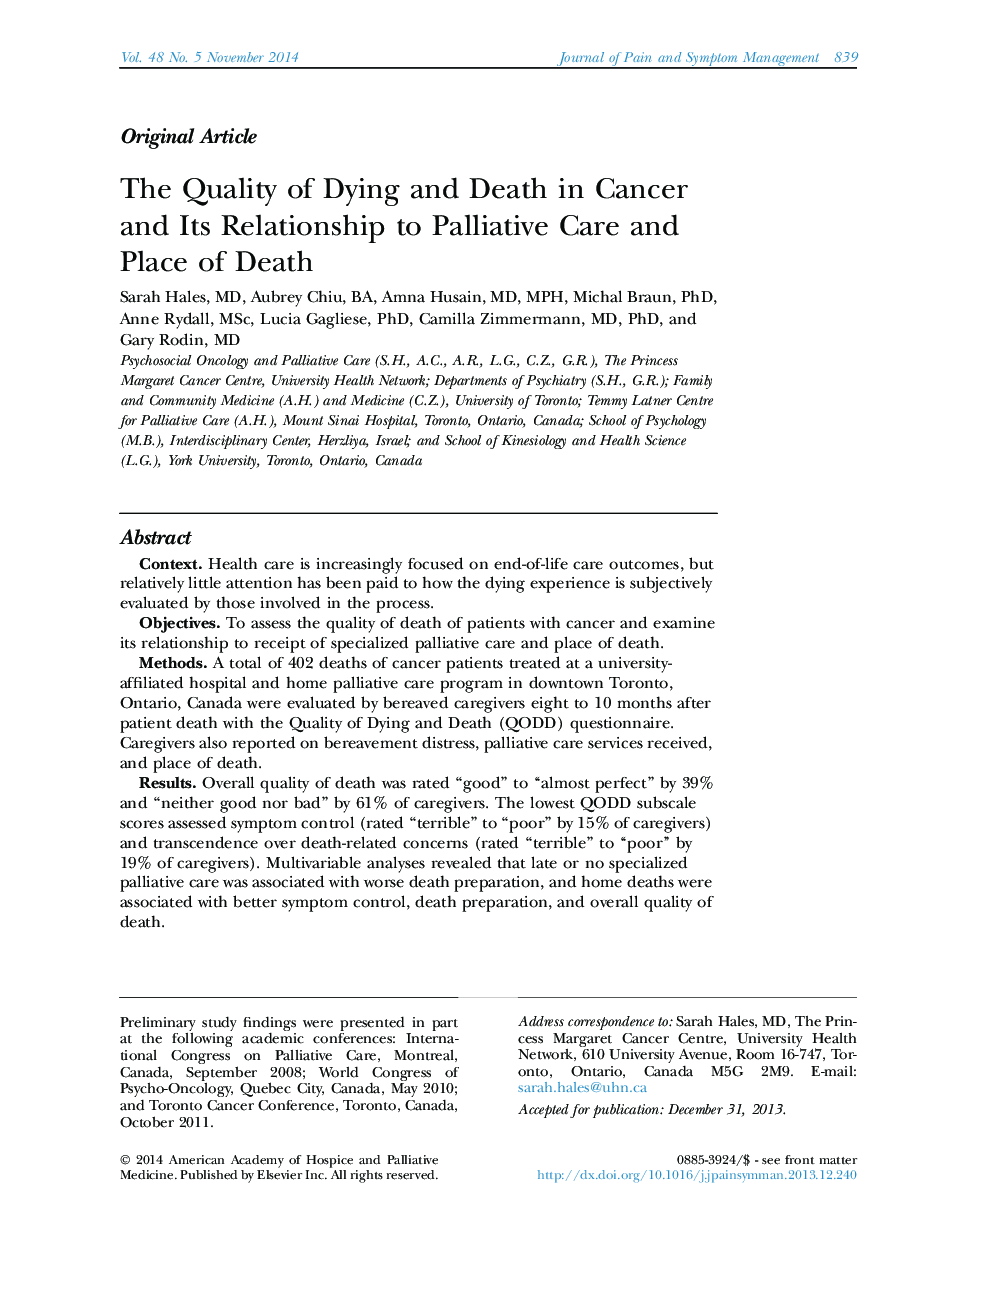 کیفیت مرگ و مرگ در سرطان و ارتباط آن با مراقبت تسکین دهنده و محل مرگ 